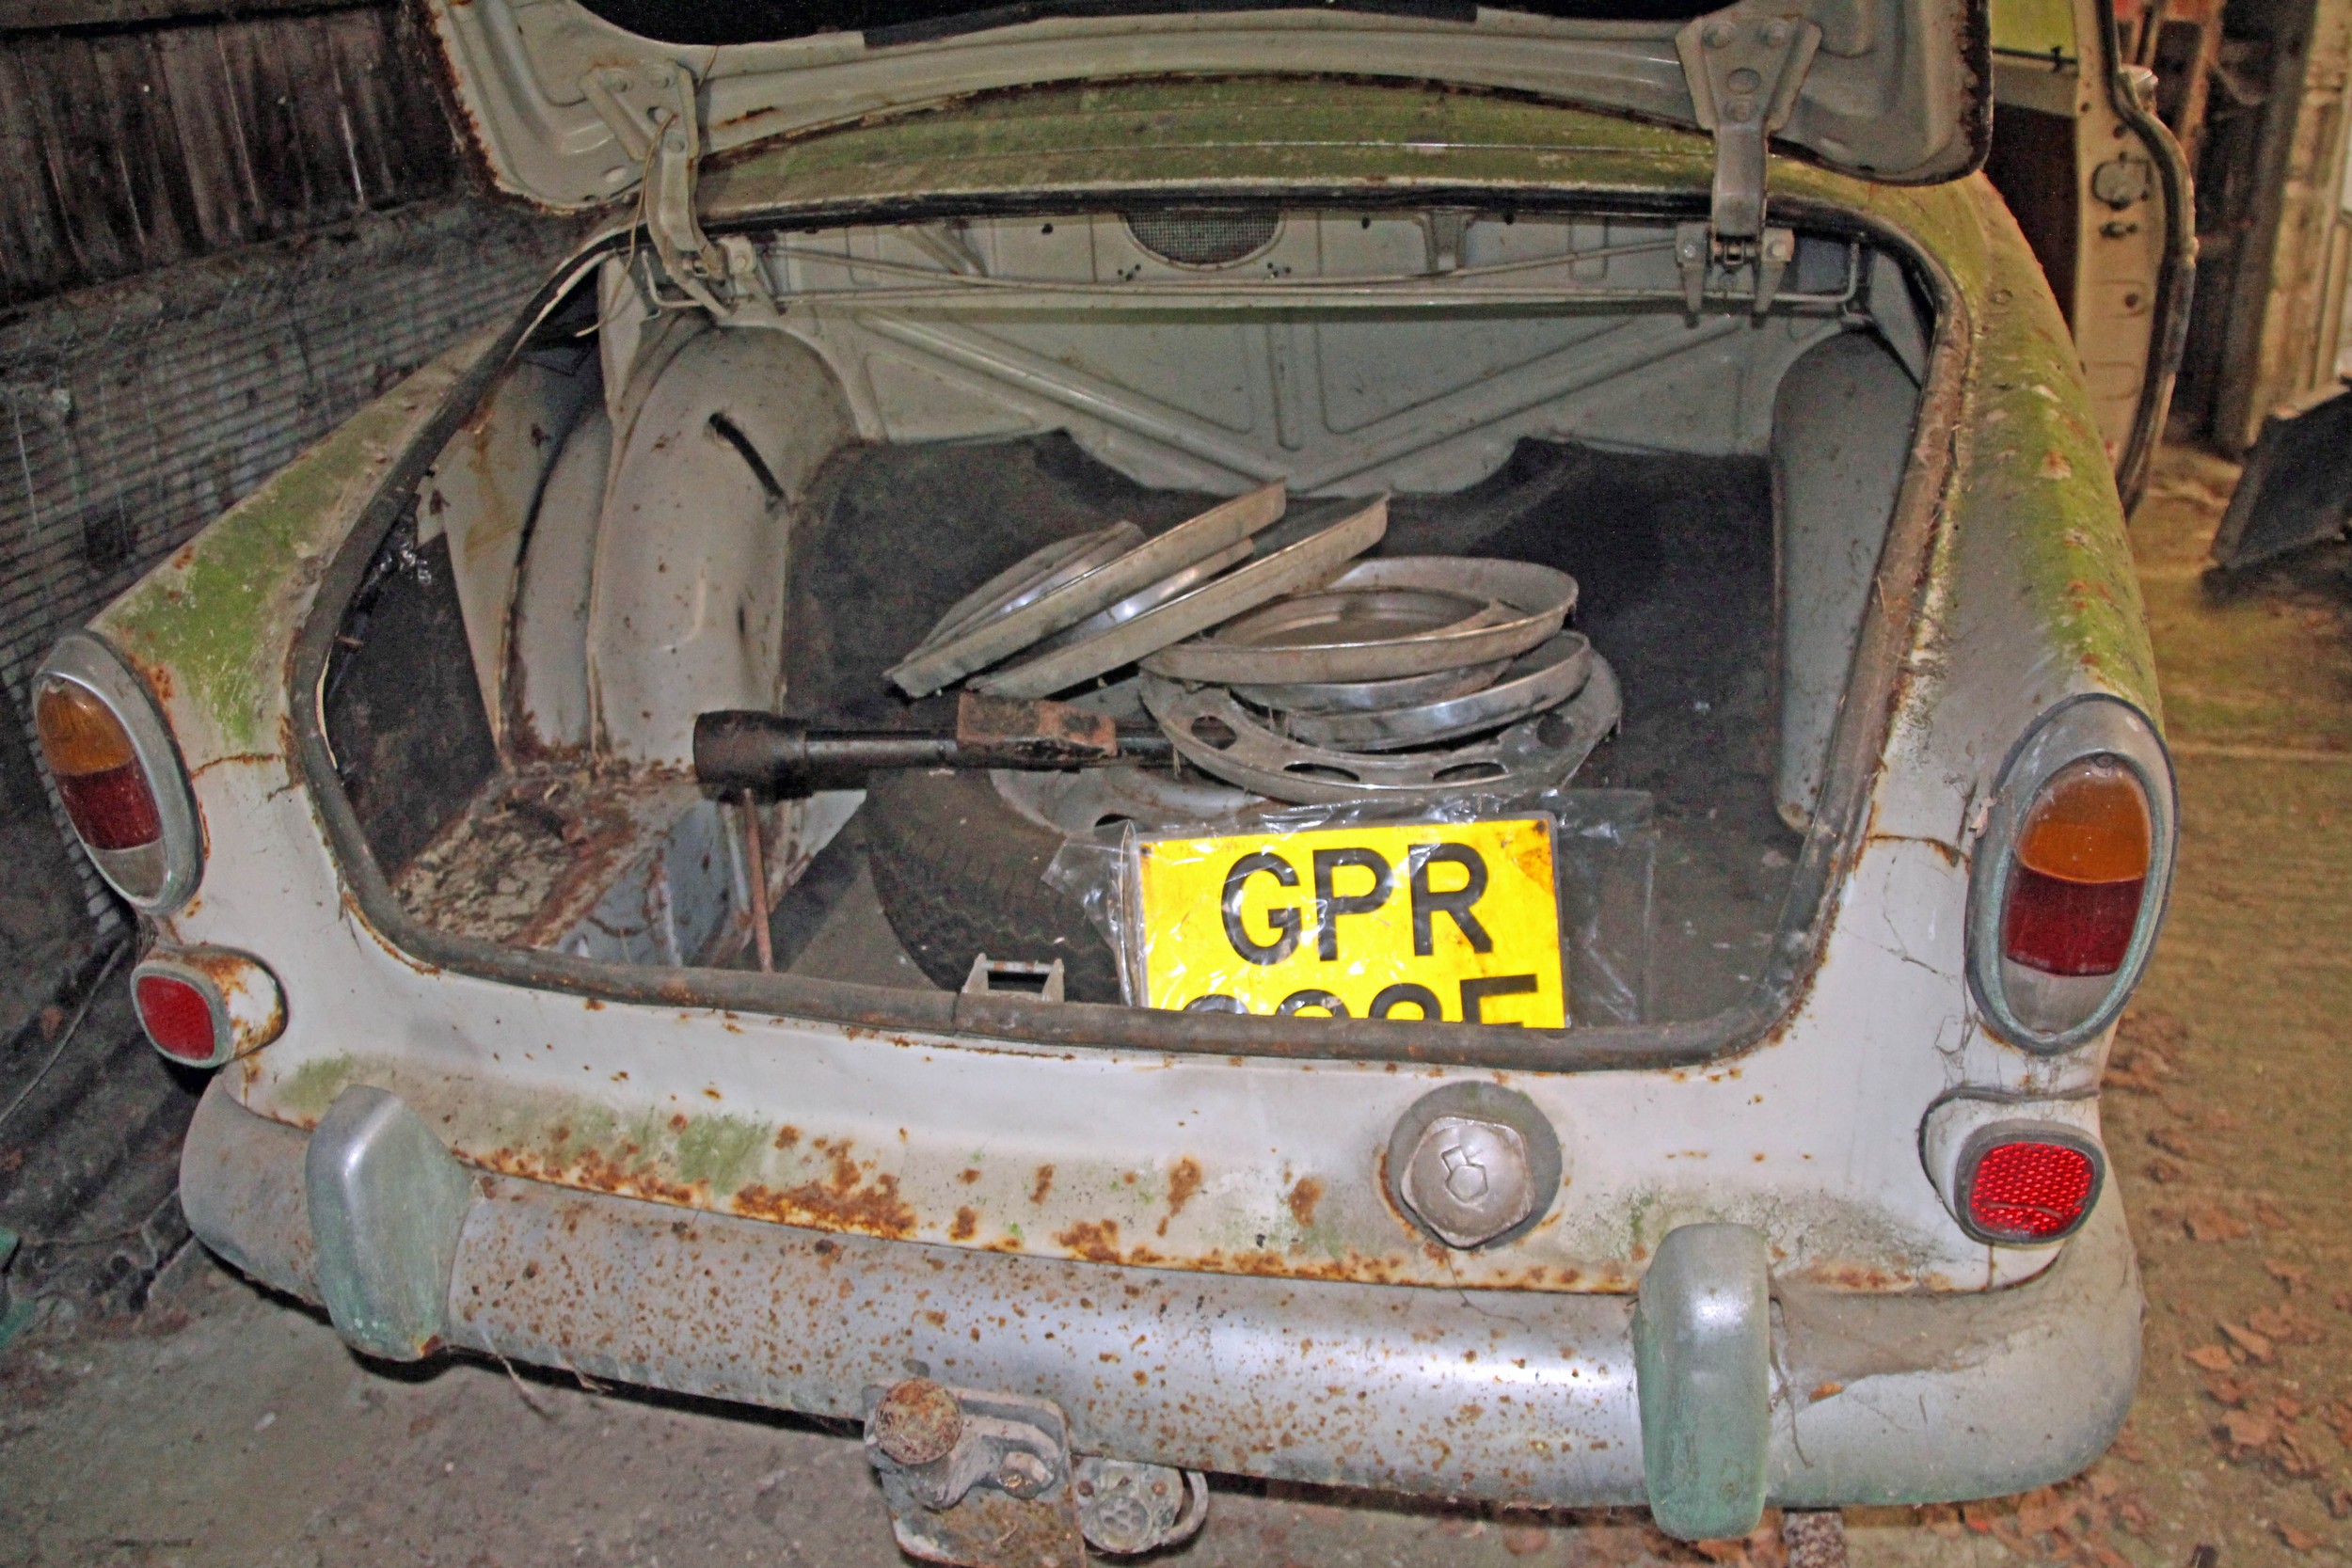 1967 Volvo 132 restoration project Registration number GPR 323E Barn - Image 6 of 18